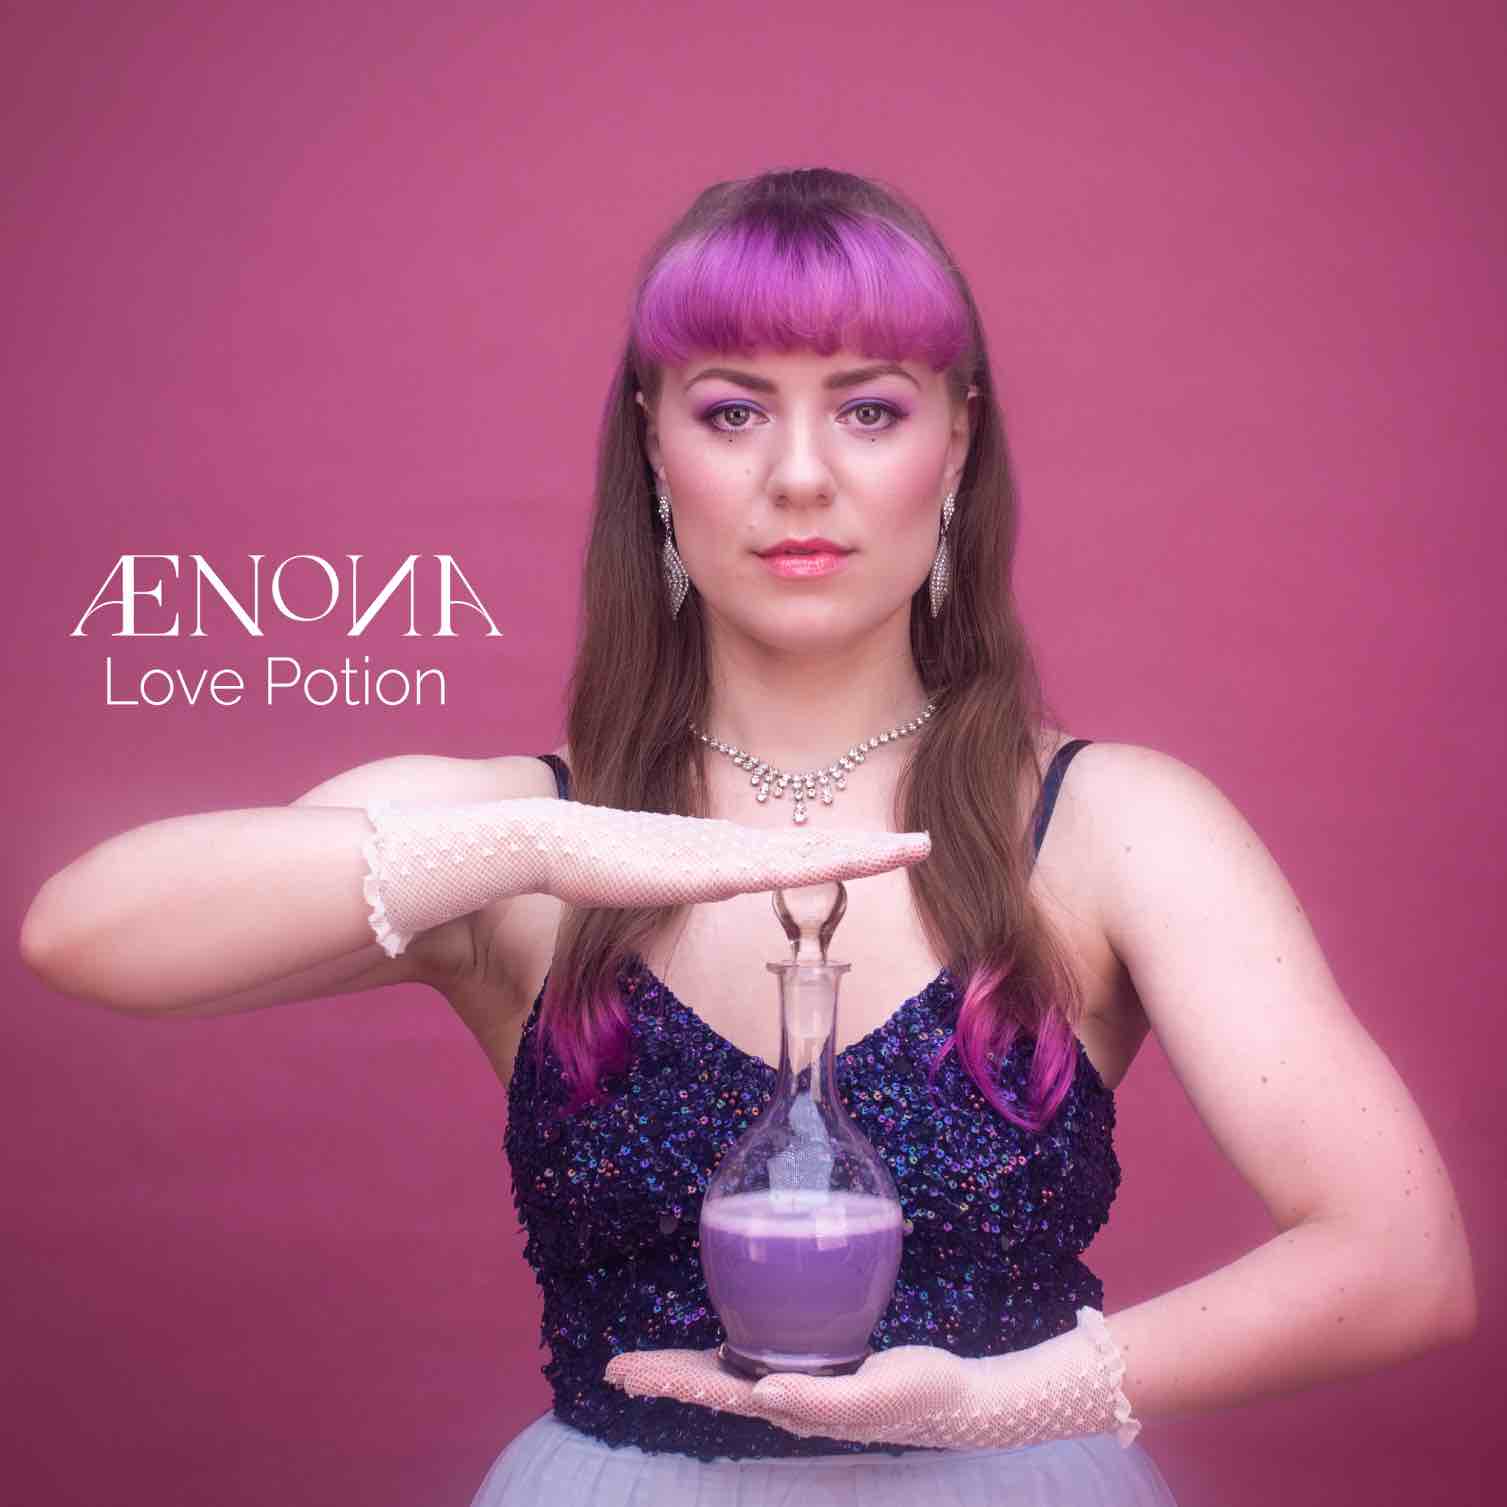 AENONA – Love Potion